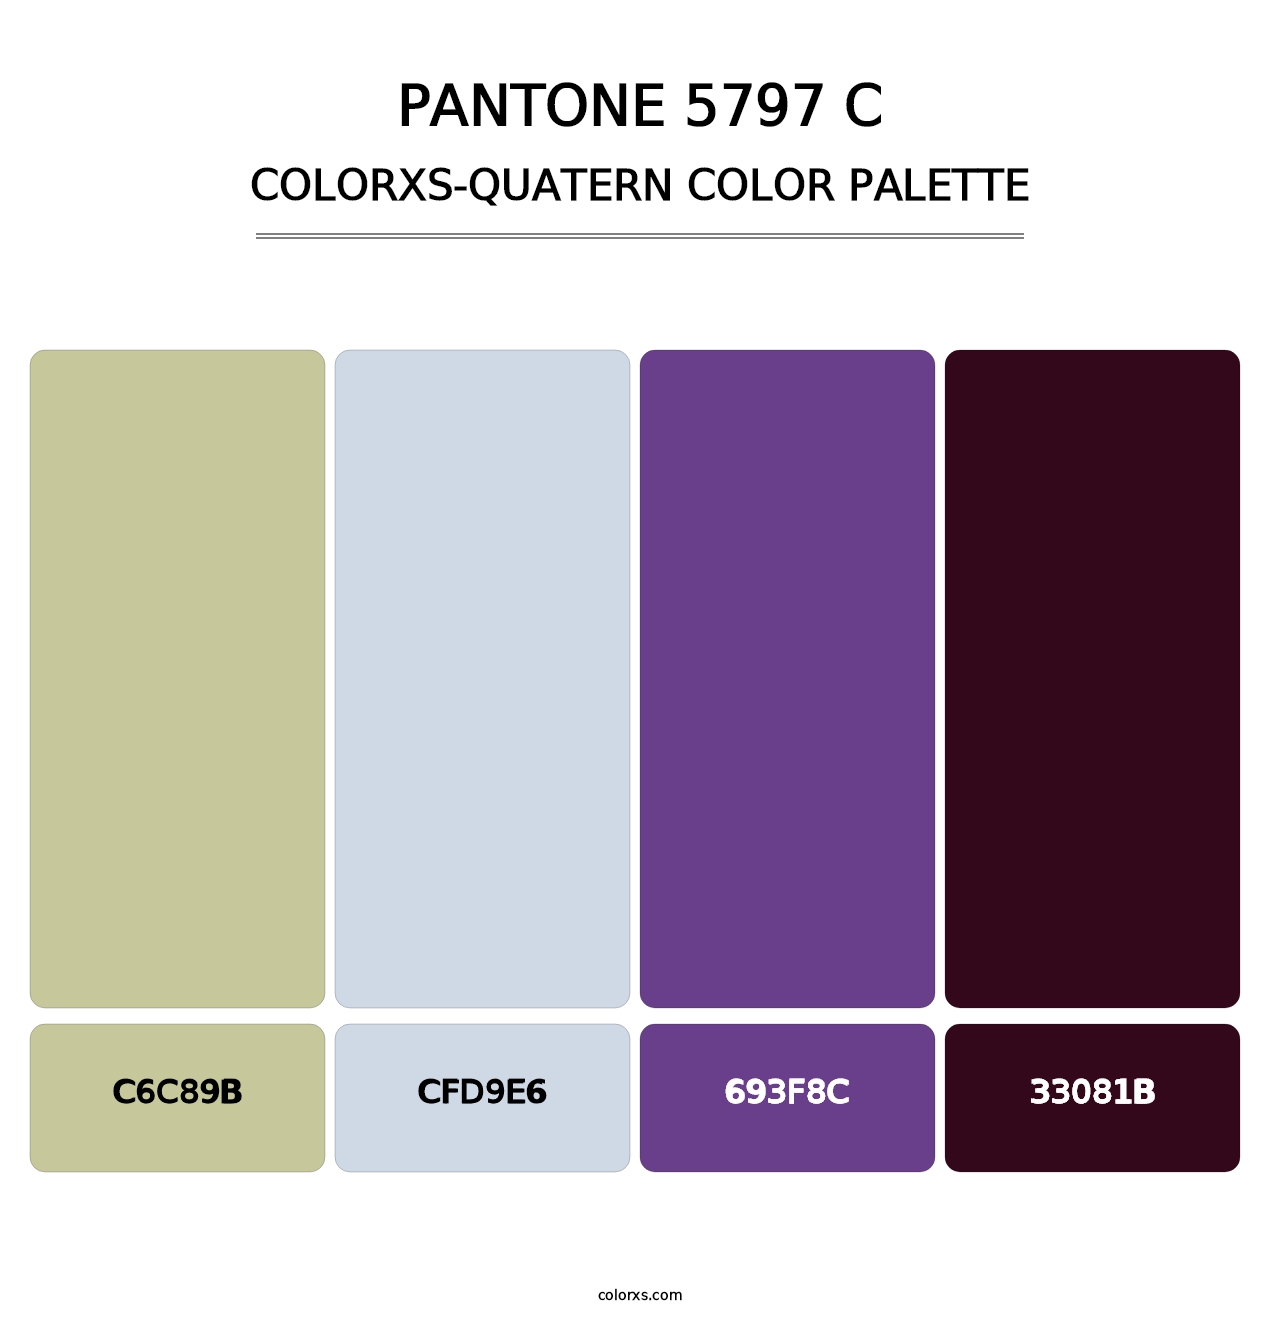 PANTONE 5797 C - Colorxs Quatern Palette